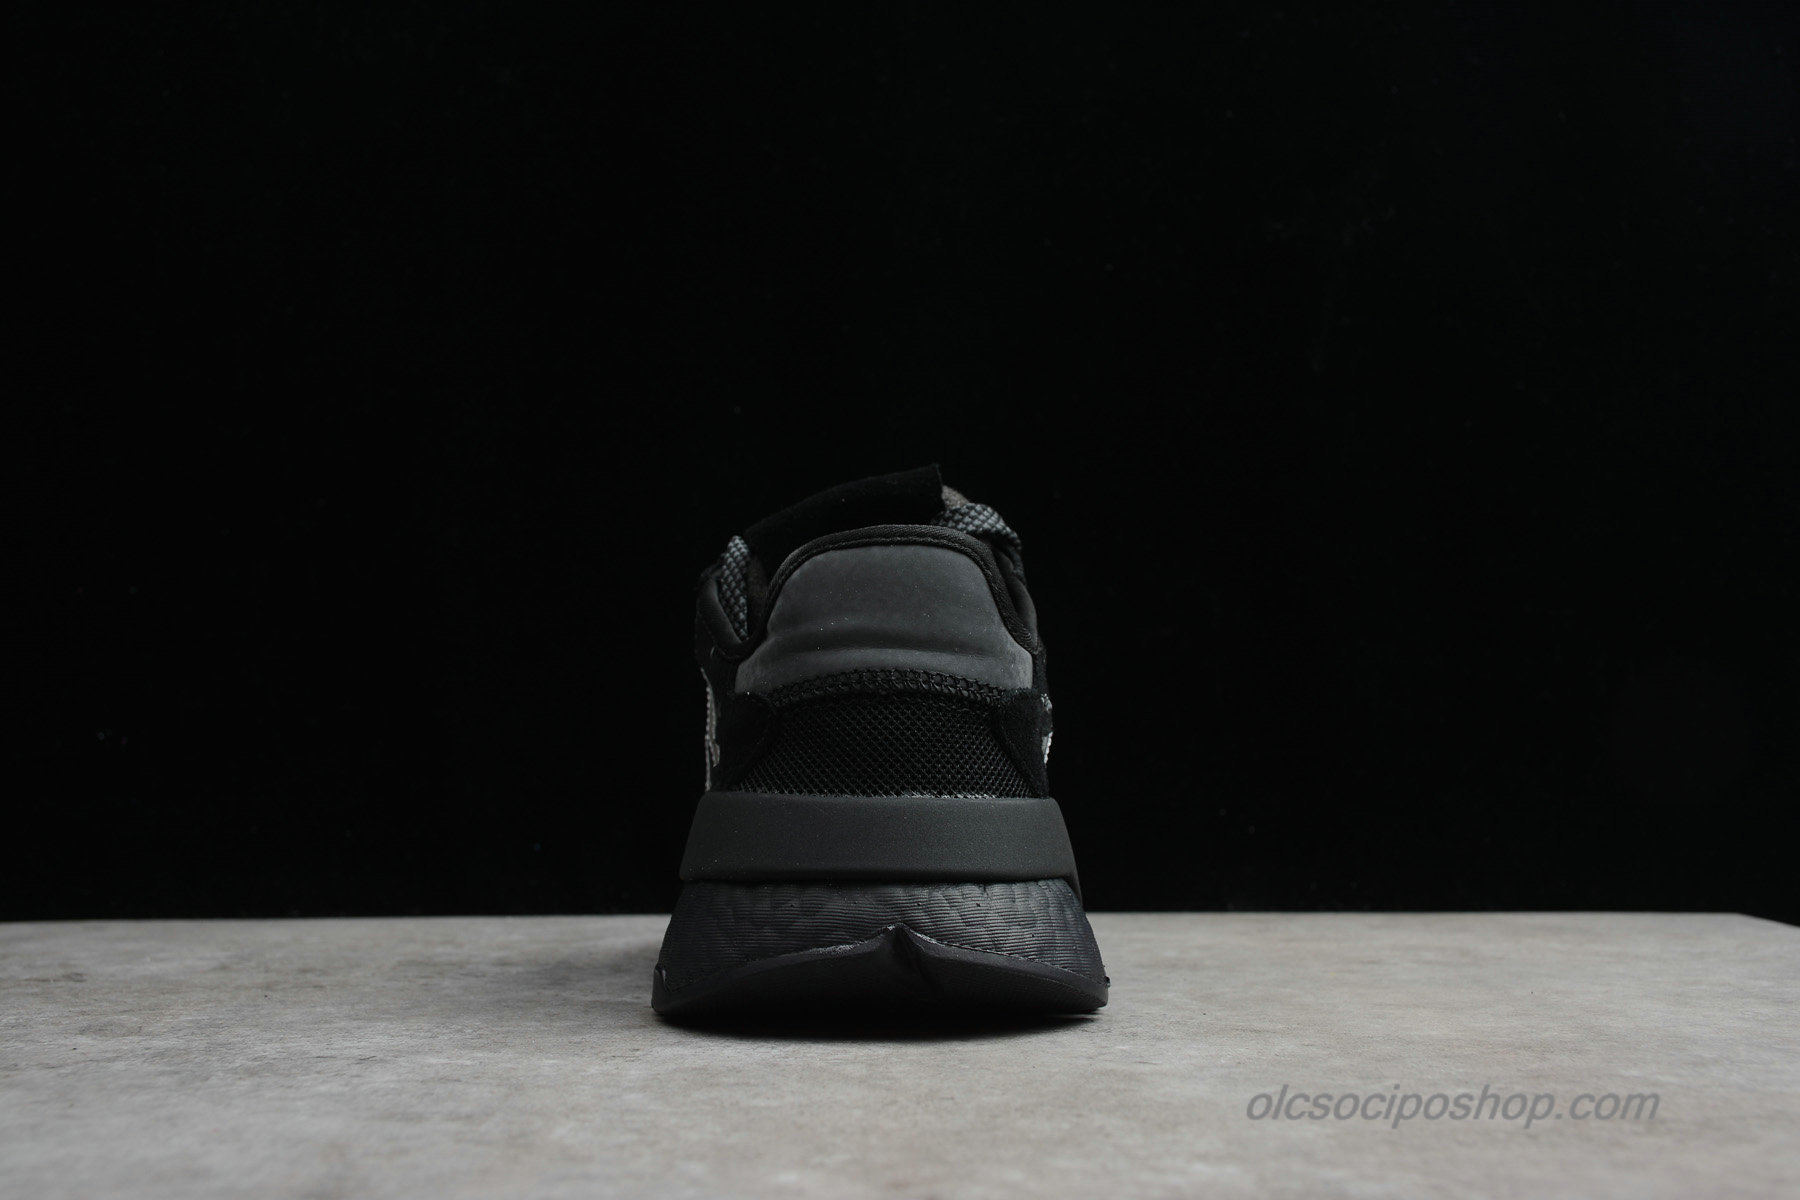 Adidas Nite Jogger 2019 Boost 3M Fekete/Szürke Cipők (CG7098) - Kattintásra bezárul